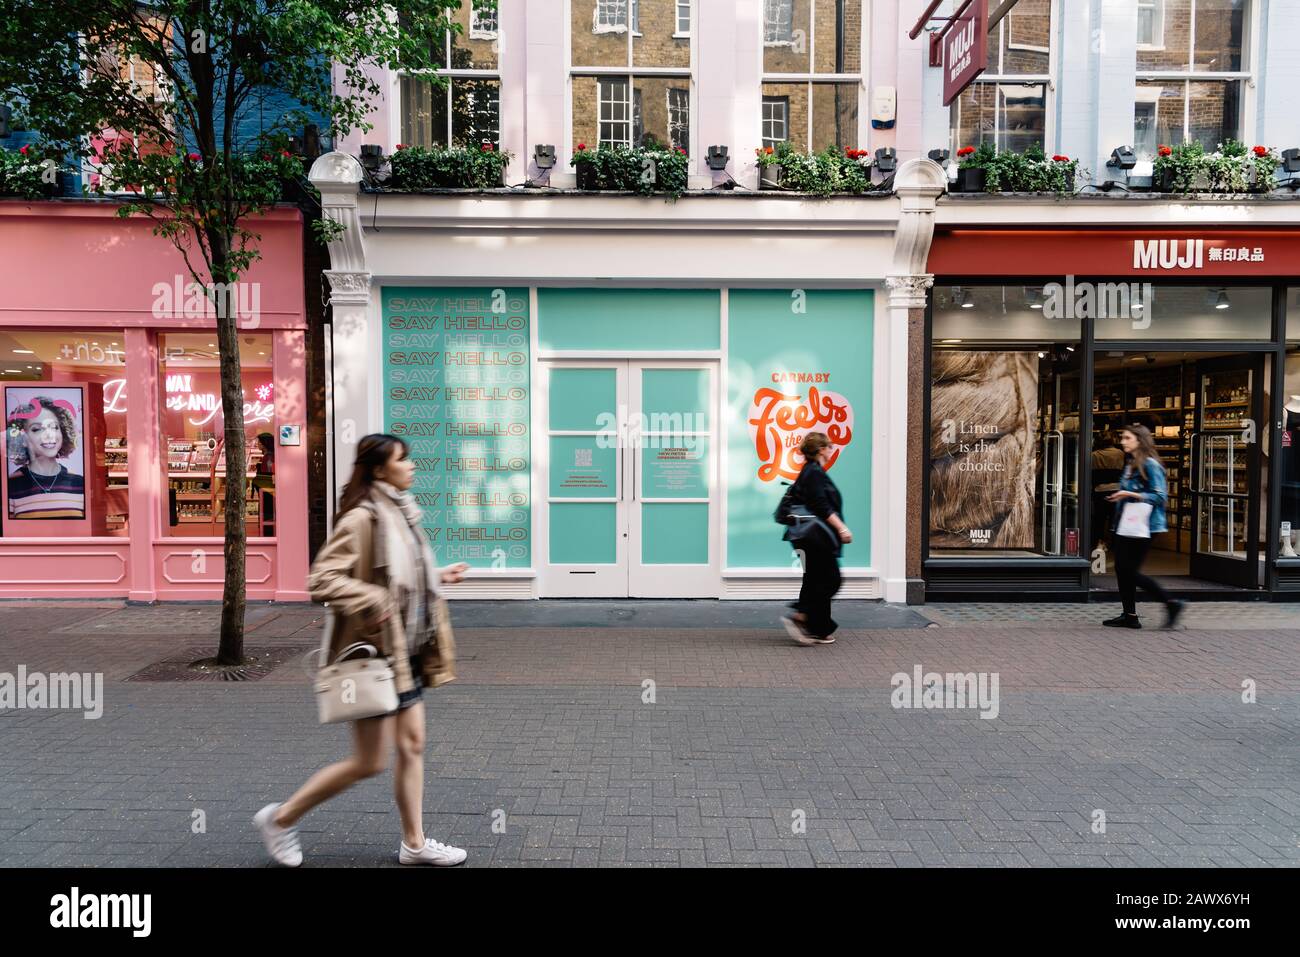 Londres, Royaume-Uni - 15 mai 2019: Les acheteurs qui passent devant un espace de vente vide à louer à Carnaby Street, Soho, dans le West End de Londres. Flou de mouvement Banque D'Images